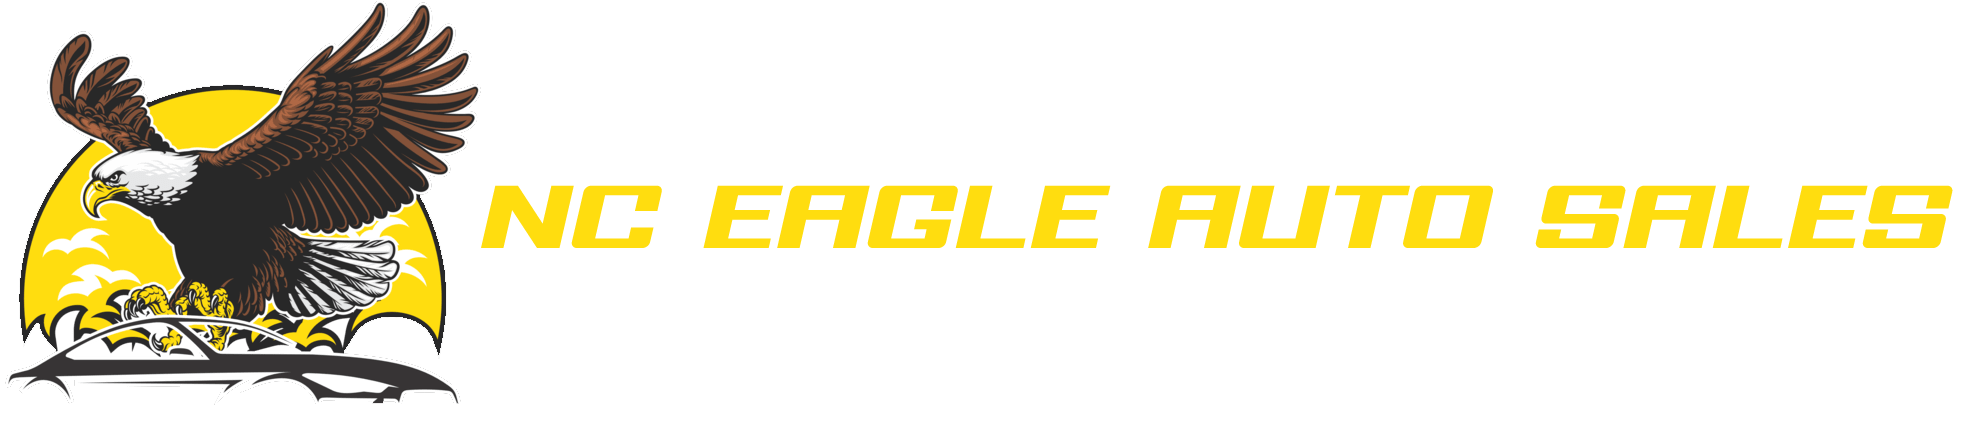 NC Eagle Auto Sales Inc